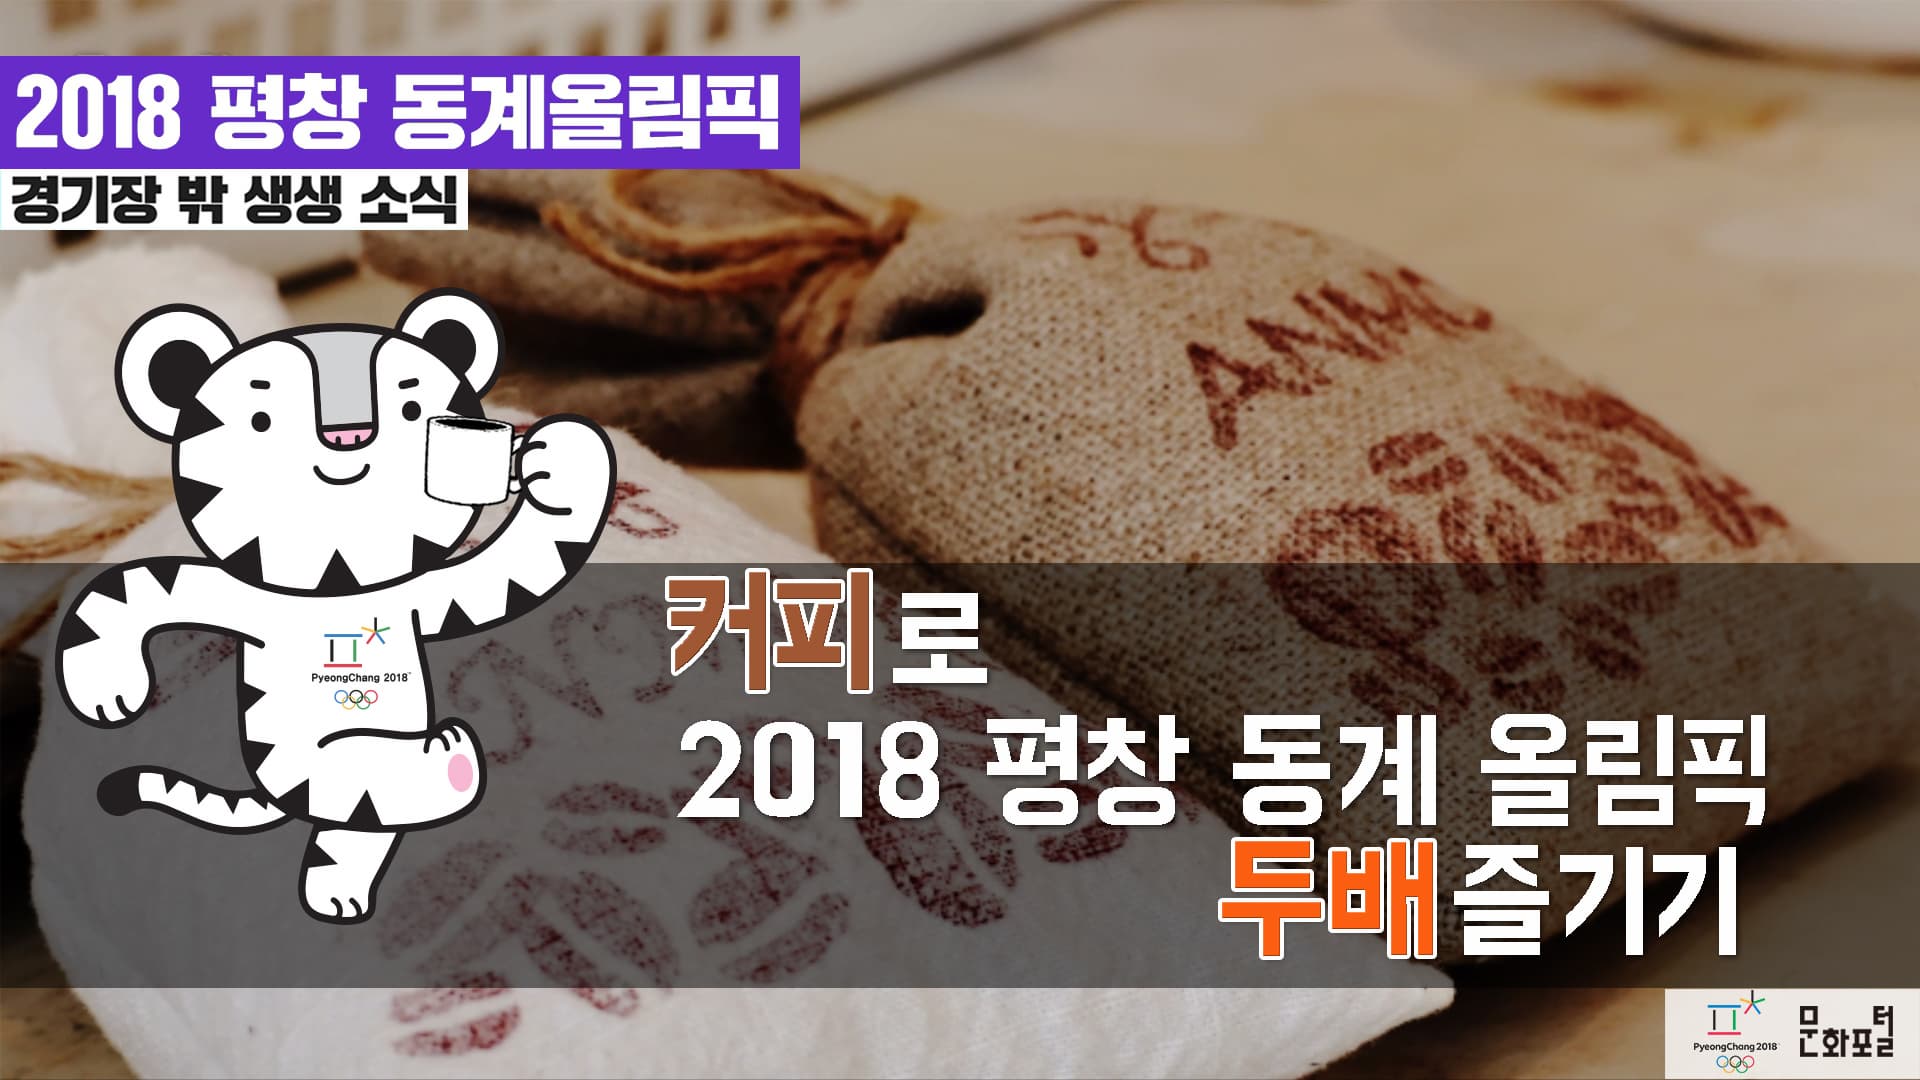 [2018 평창]커피로 2018 평창 동계 올림픽 두 배 즐기기